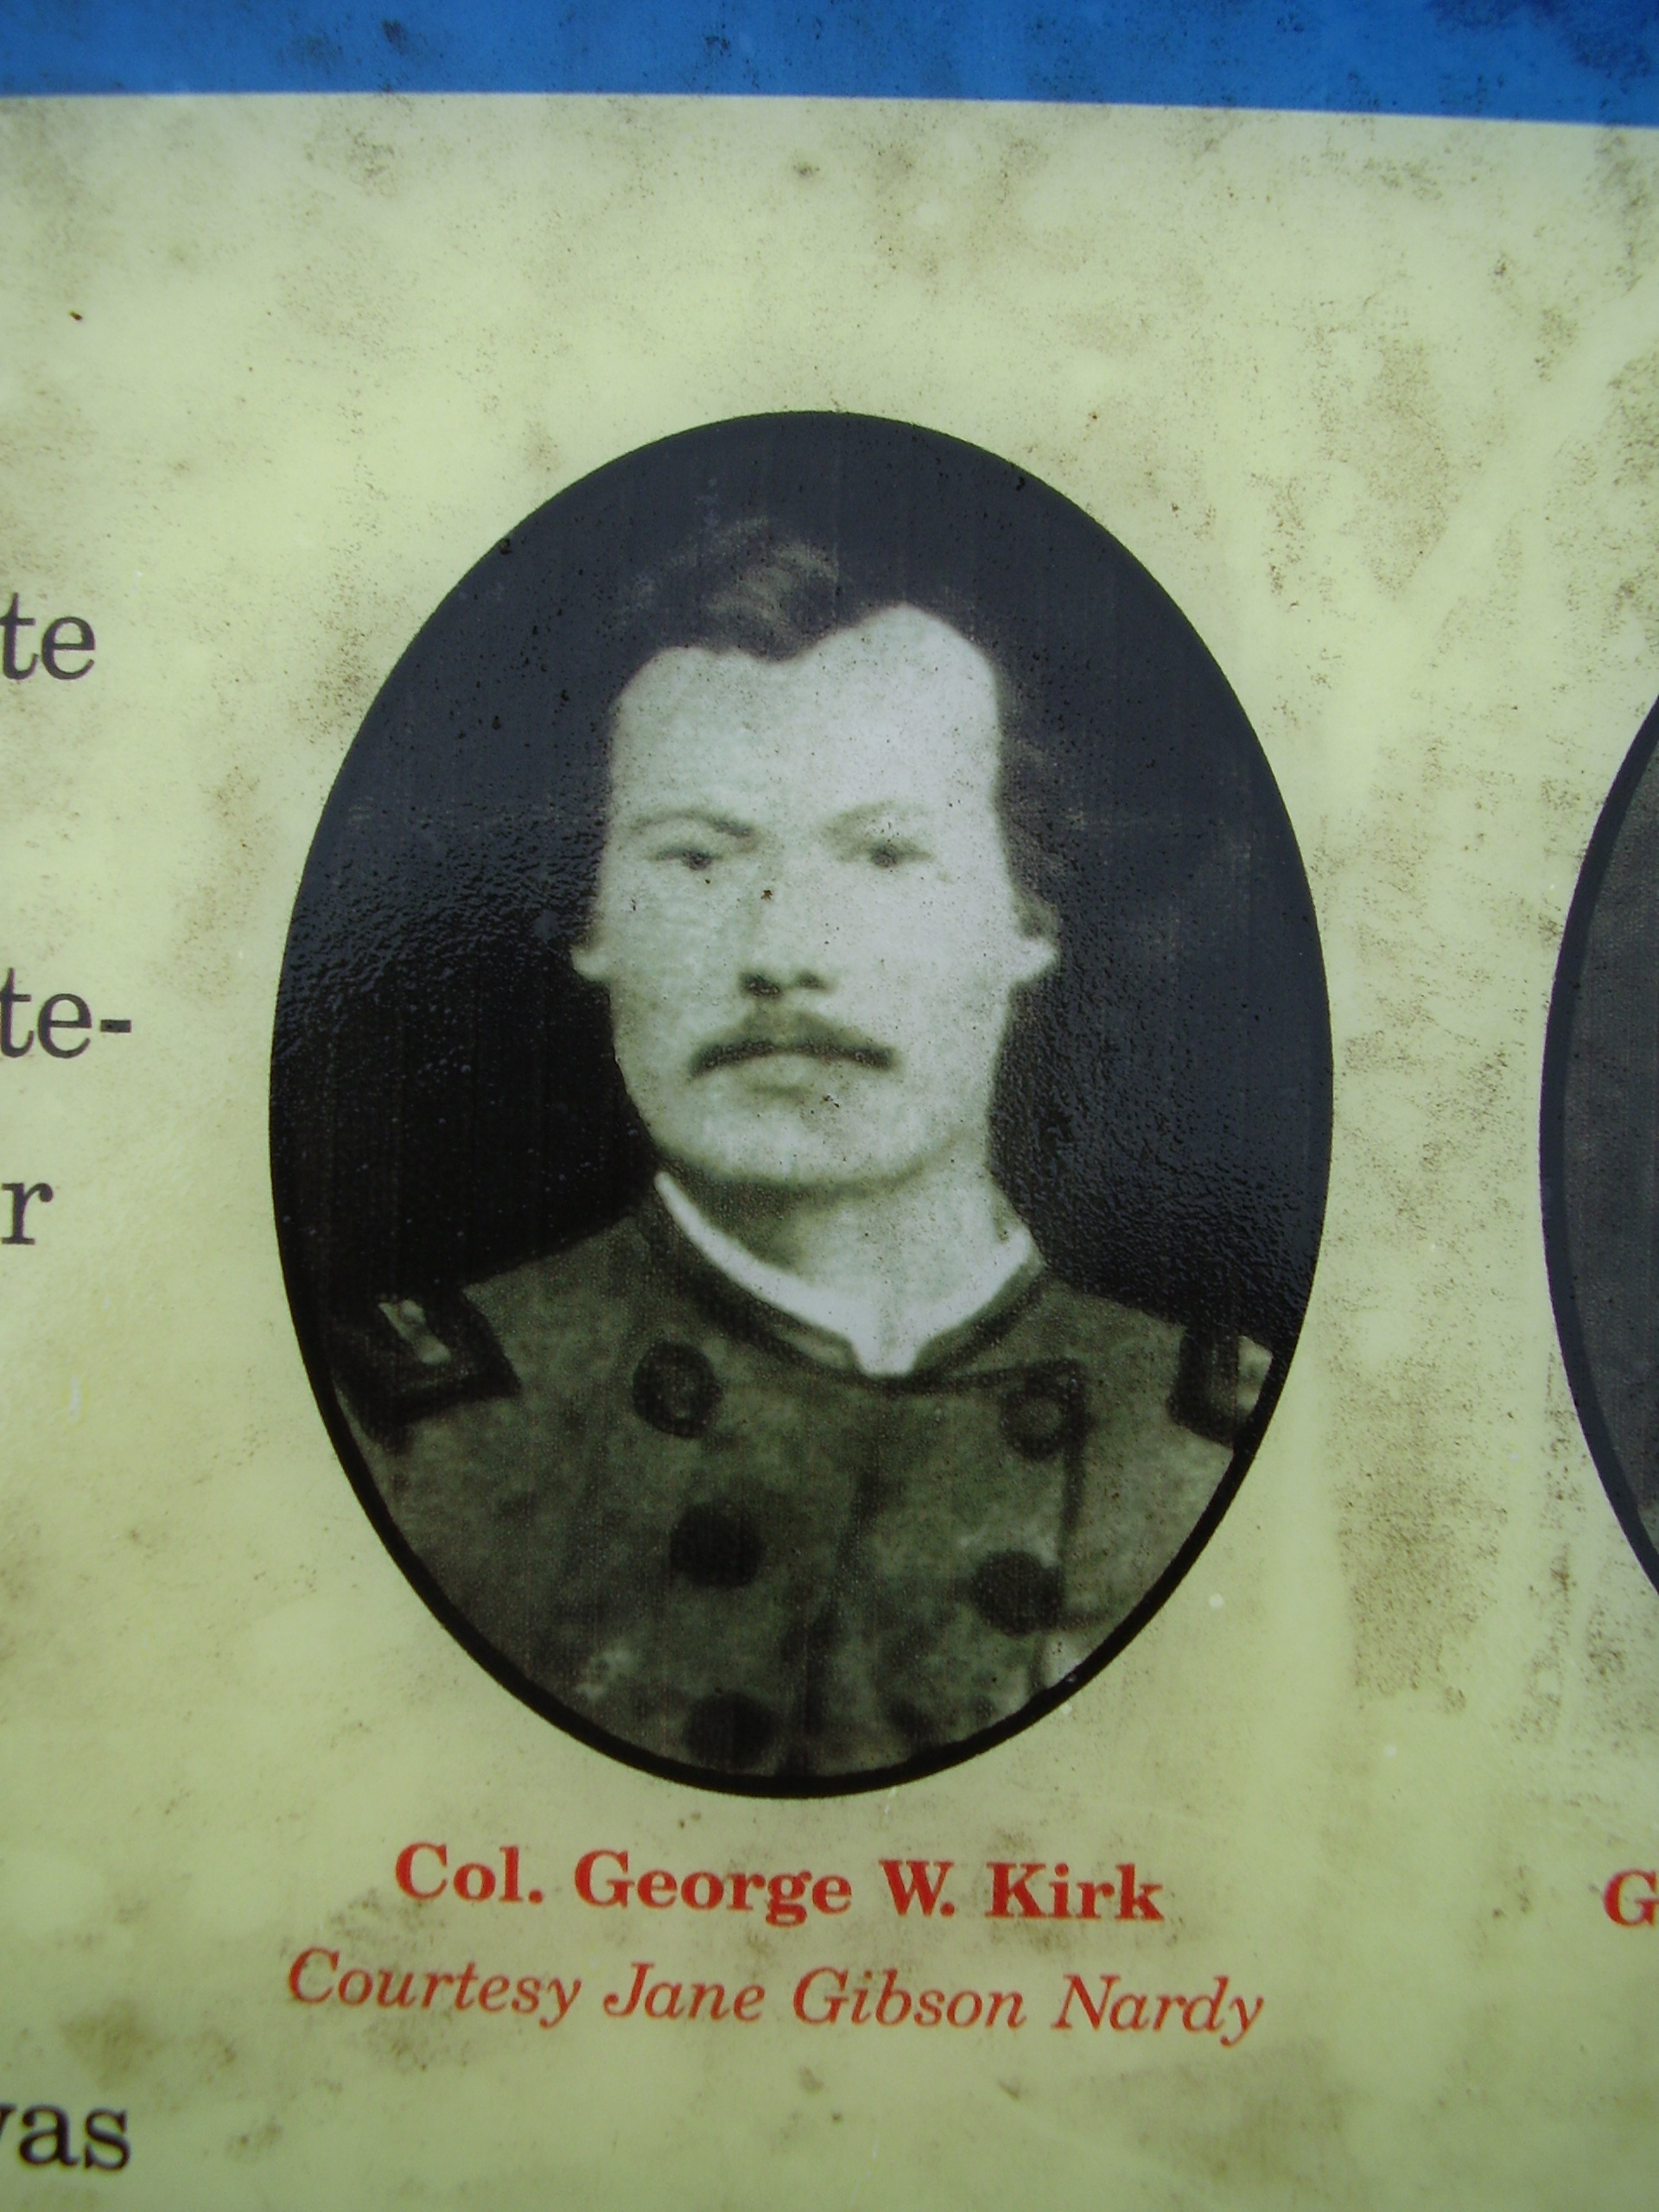 Col. George W. Kirk